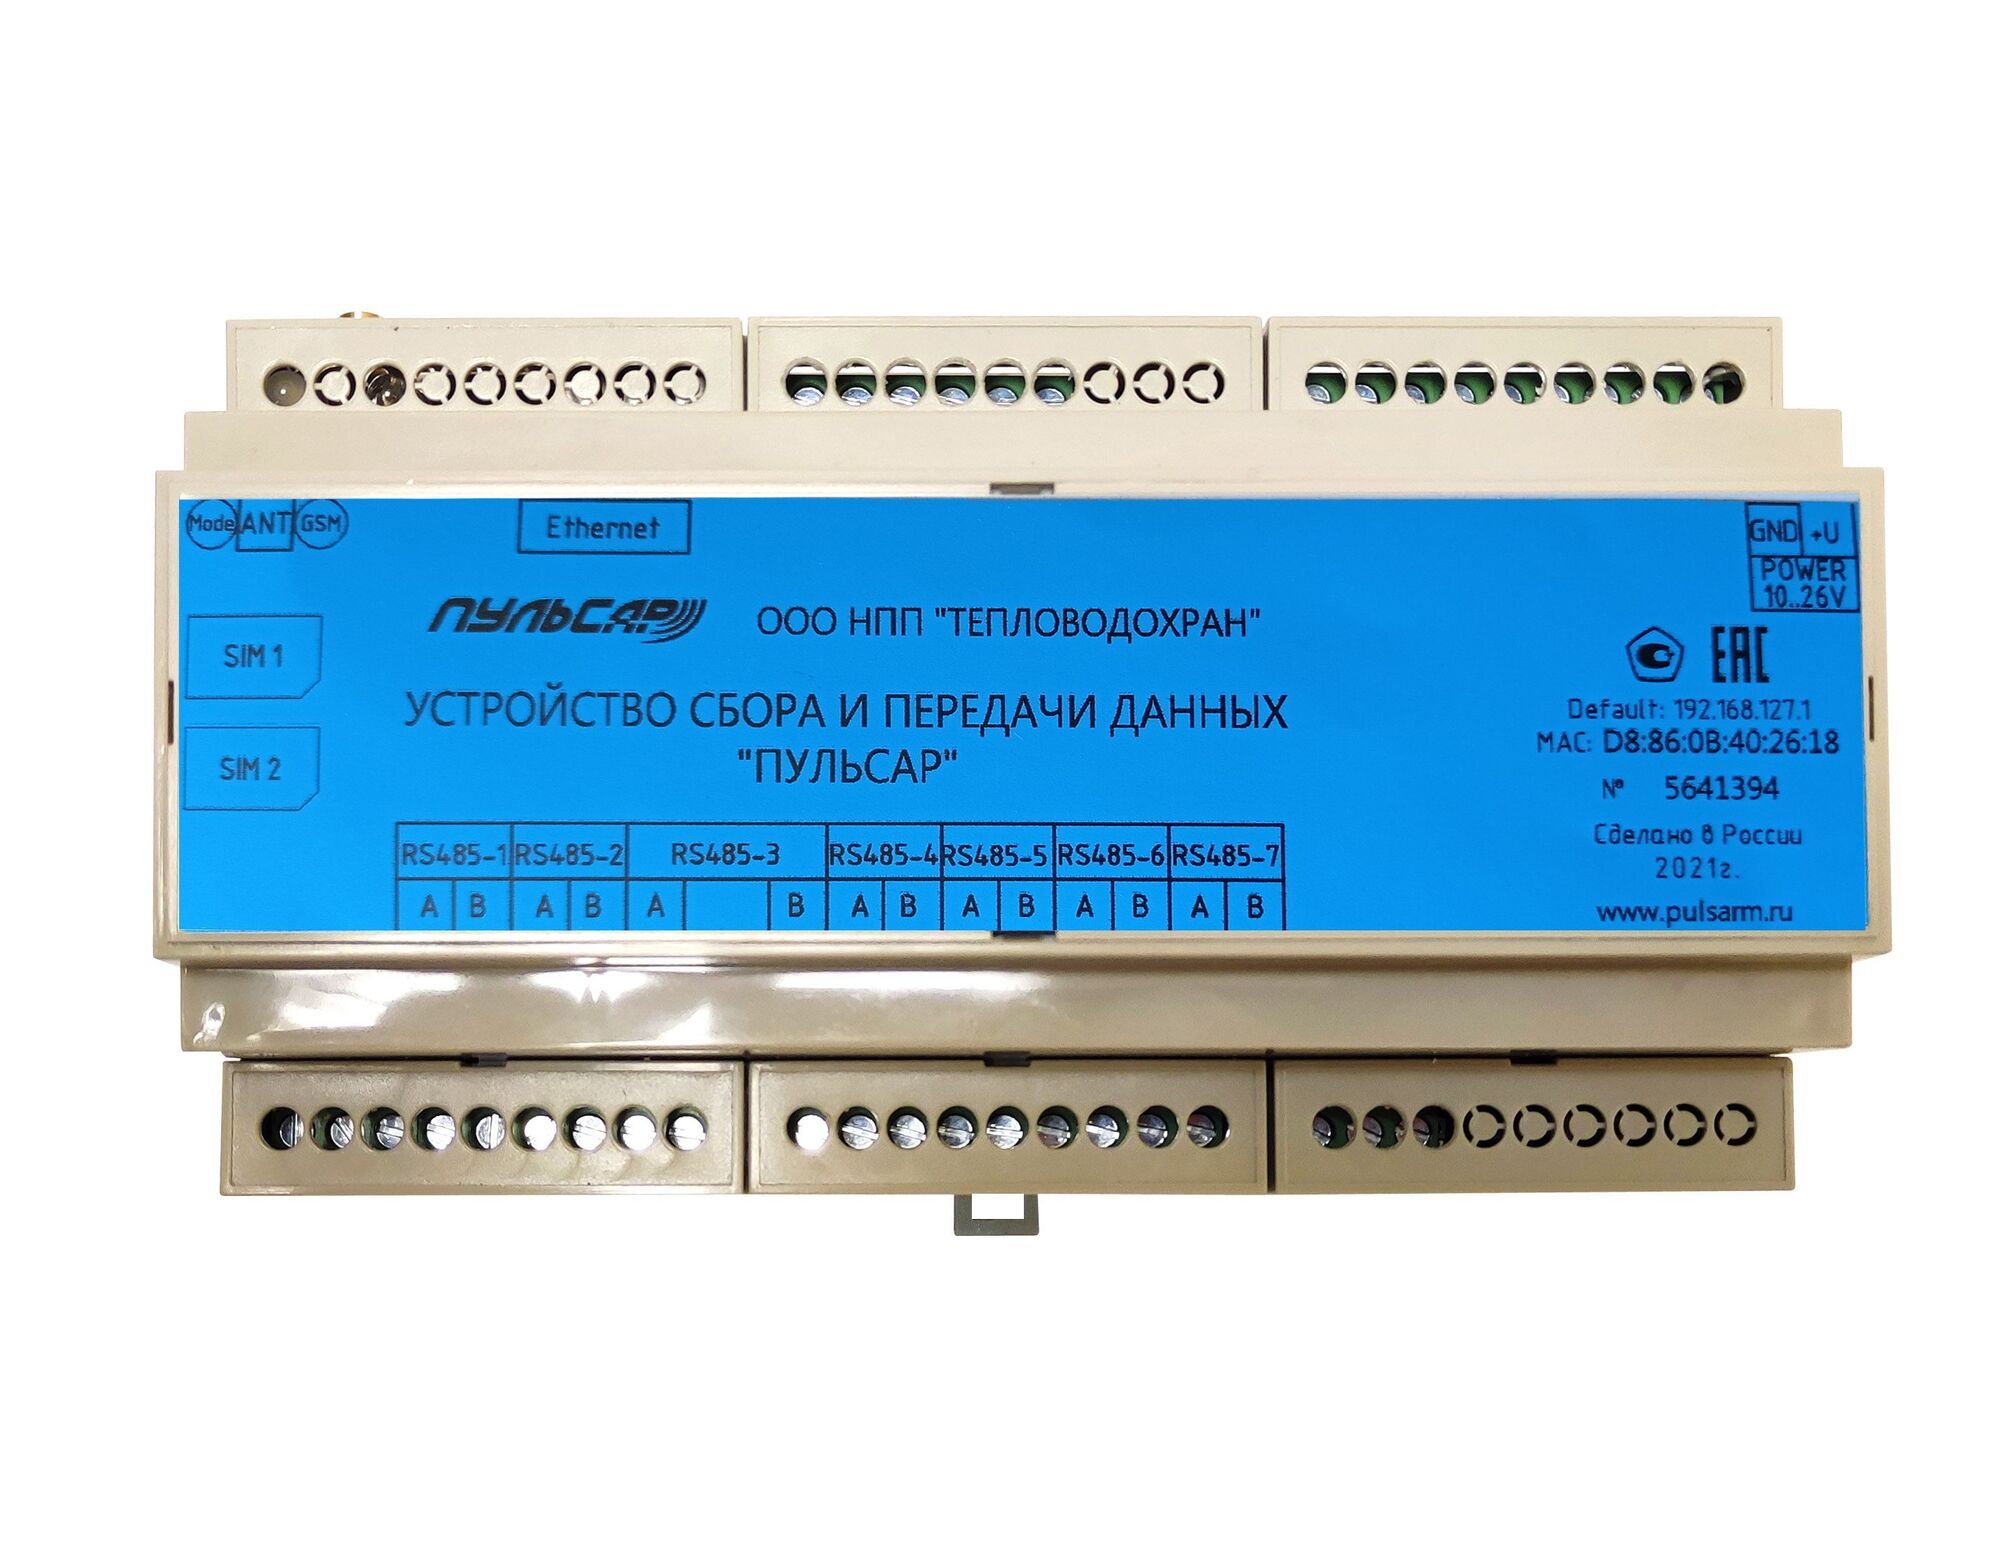 УСПД «Пульсар» модель 2, 7хRS-485; Ethernet; GSM Н00024632